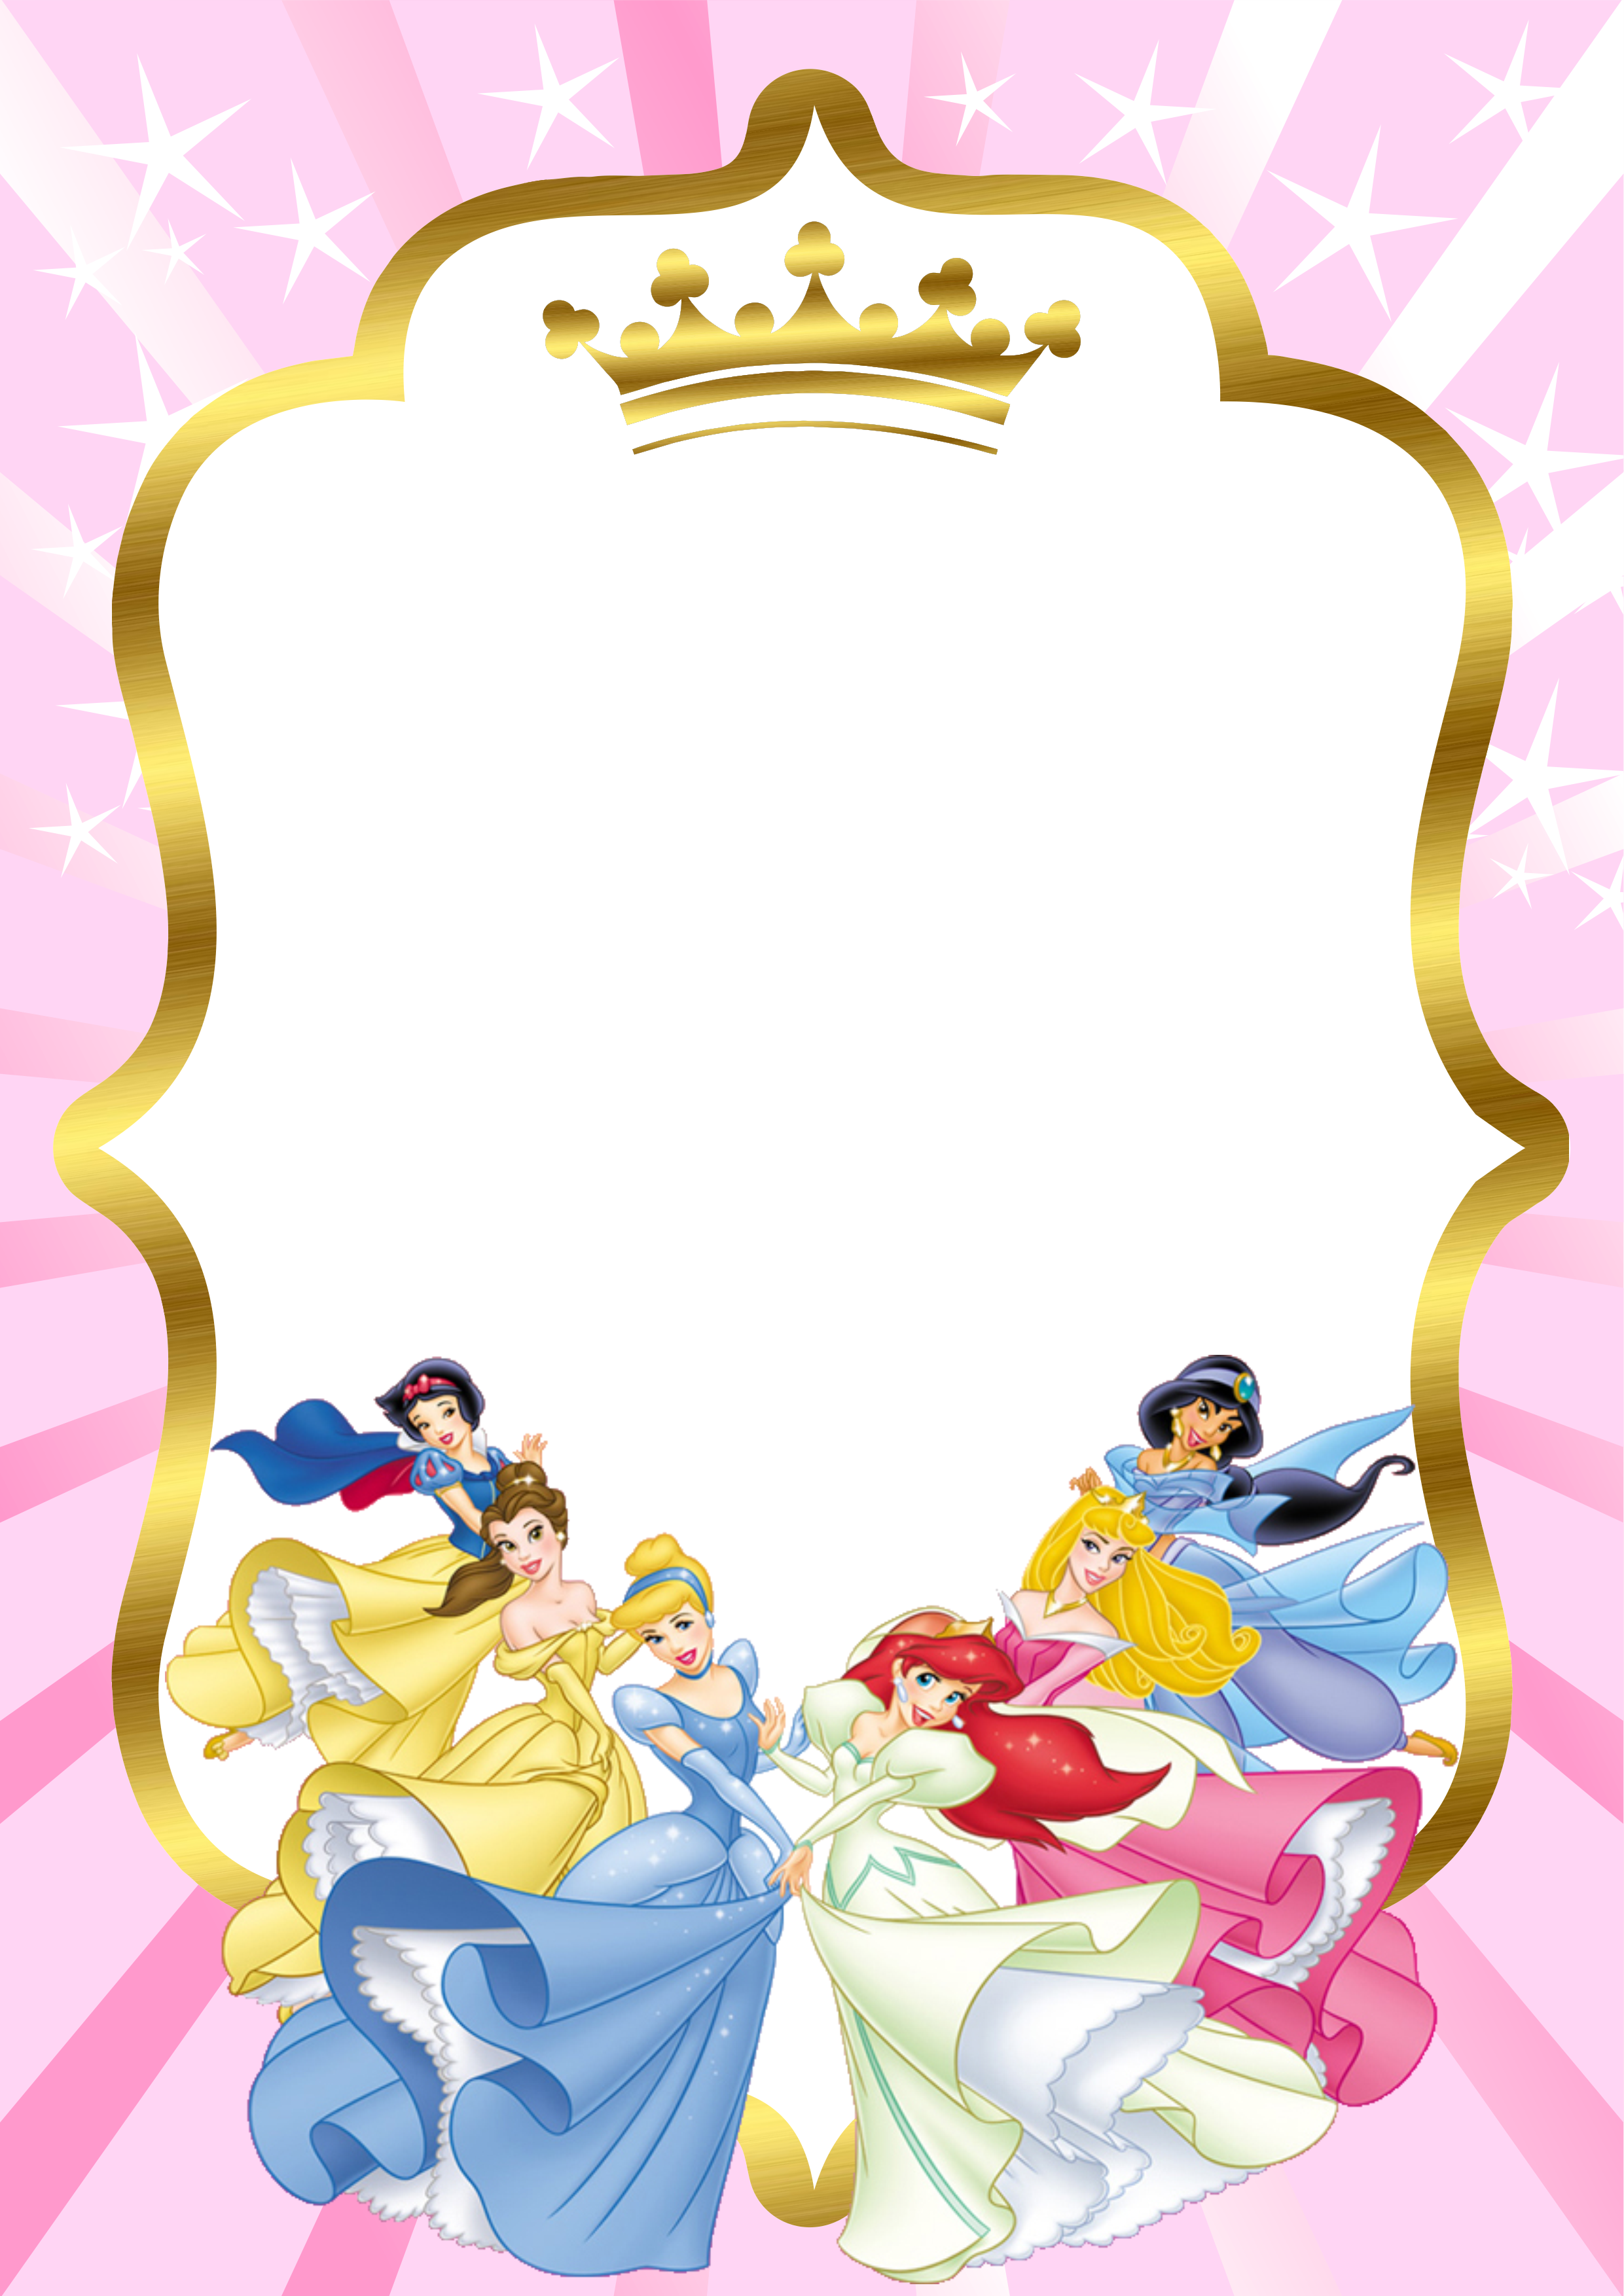 Pack de imagens grátis 10 convites princesas disney prontos para editar e imprimir ou enviar via whatsapp